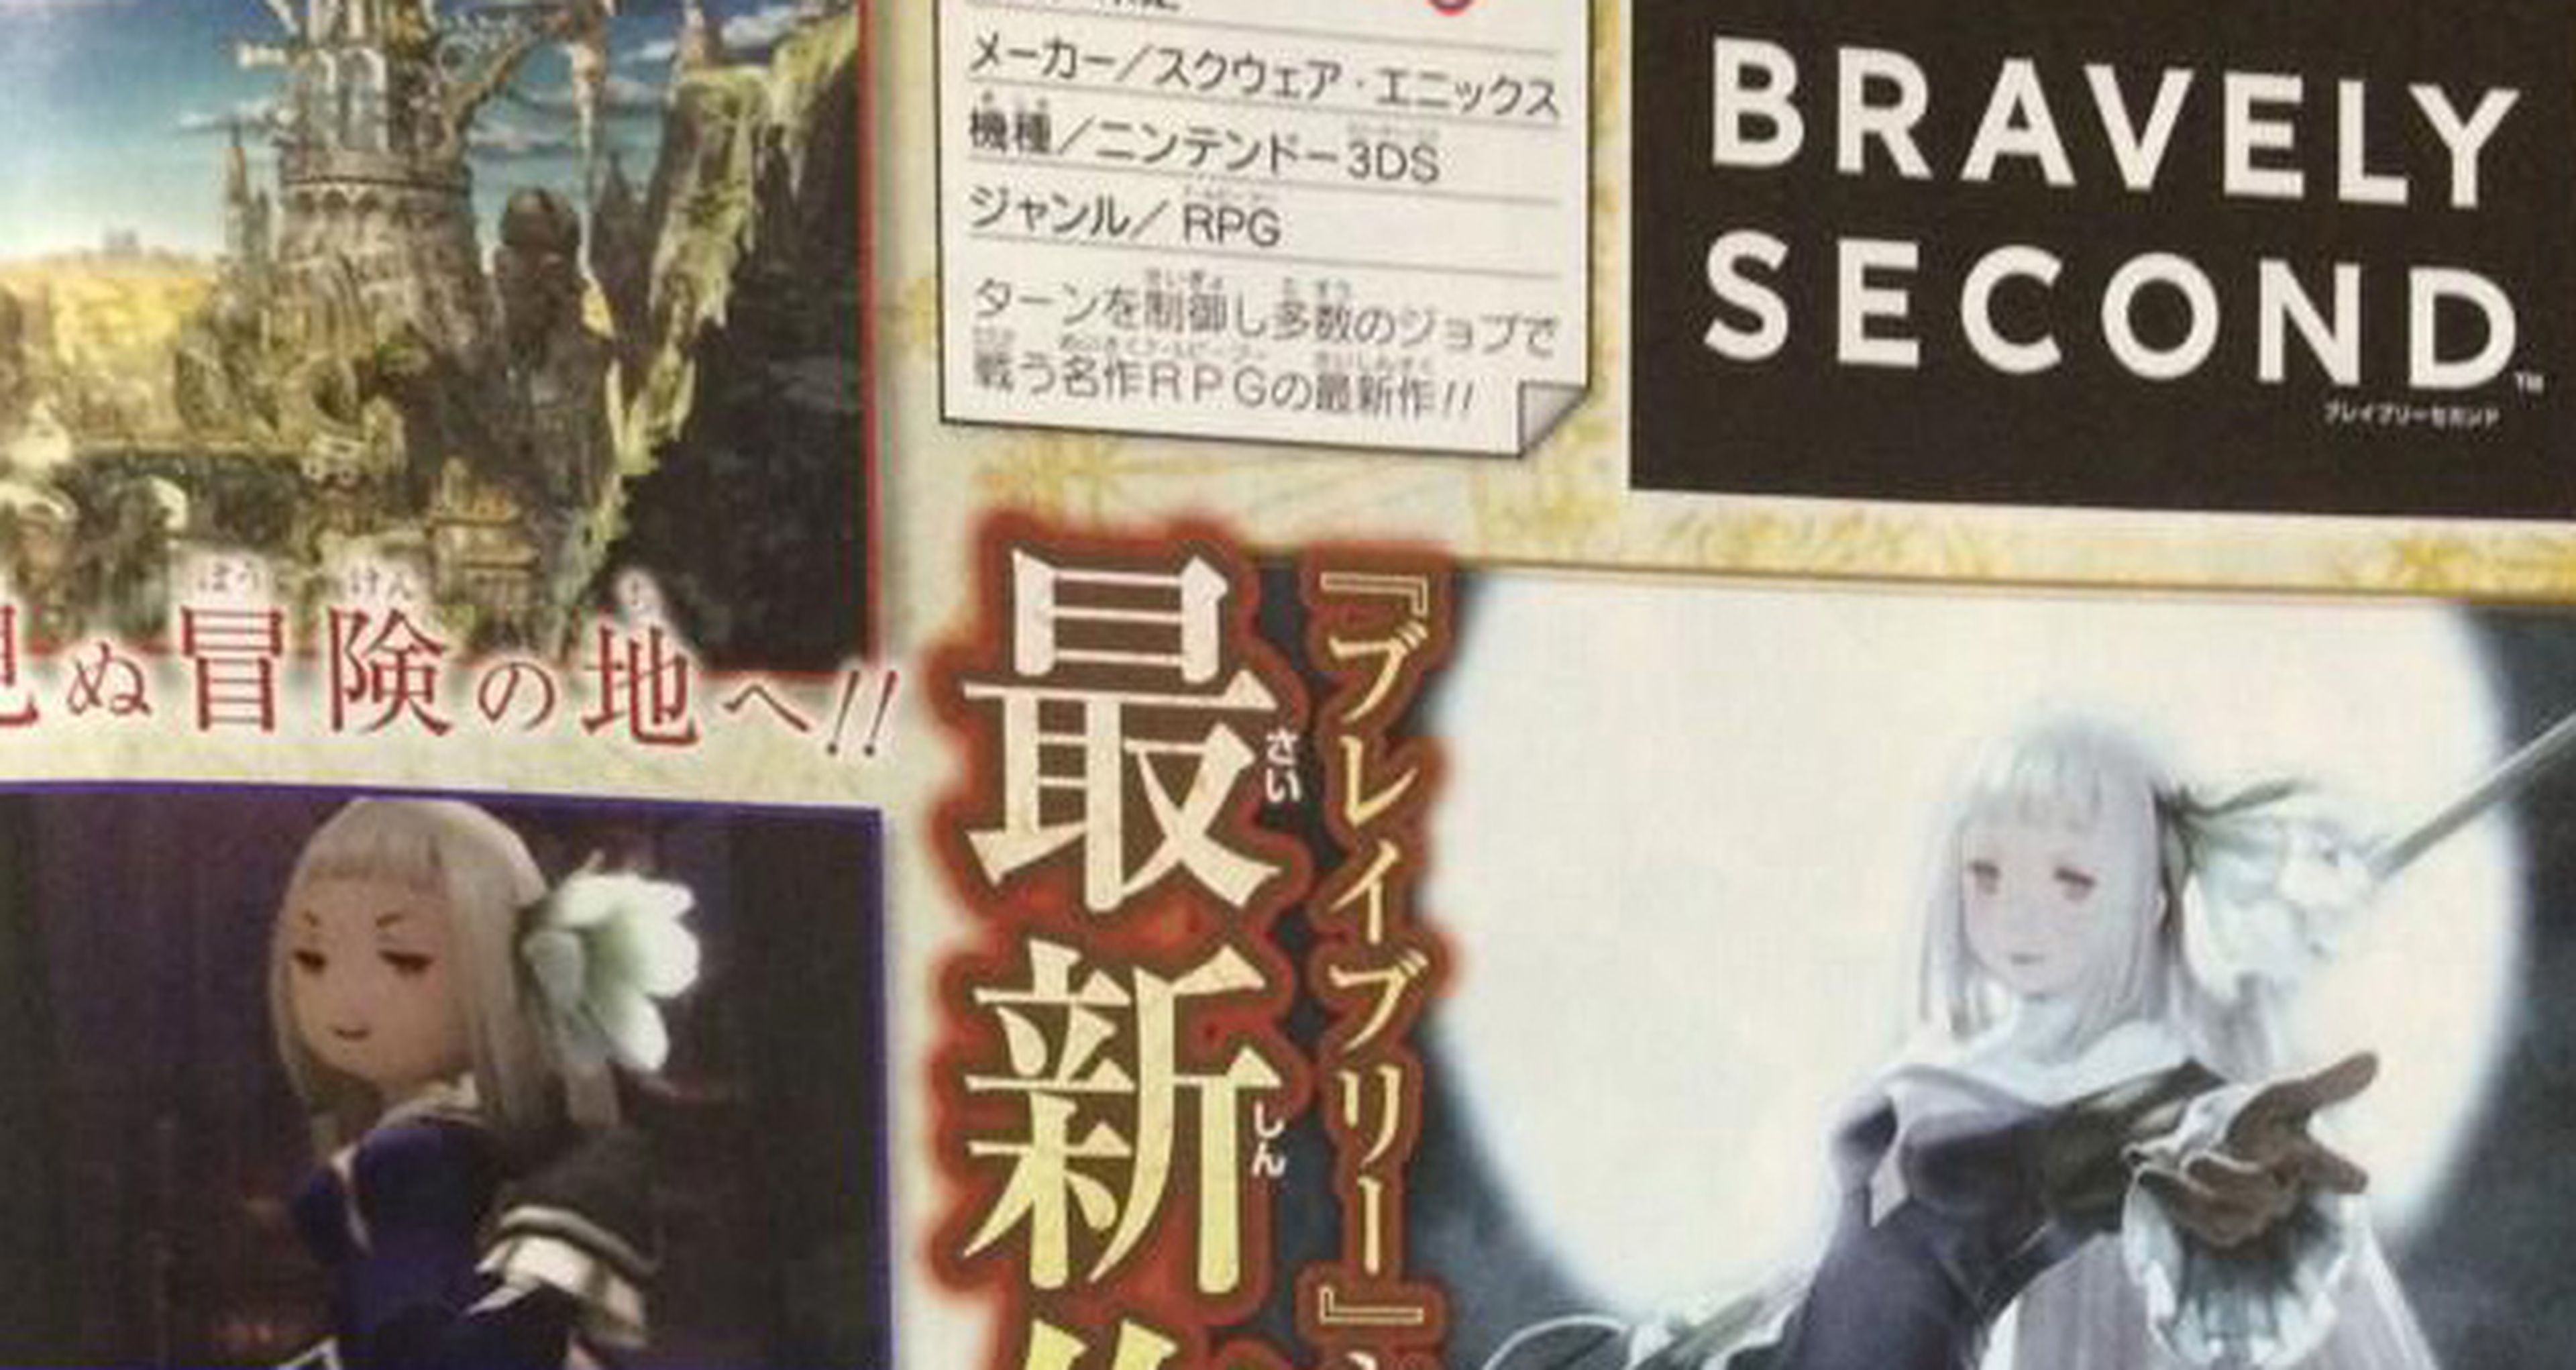 Bravely Second anunciado oficialmente por Square-Enix